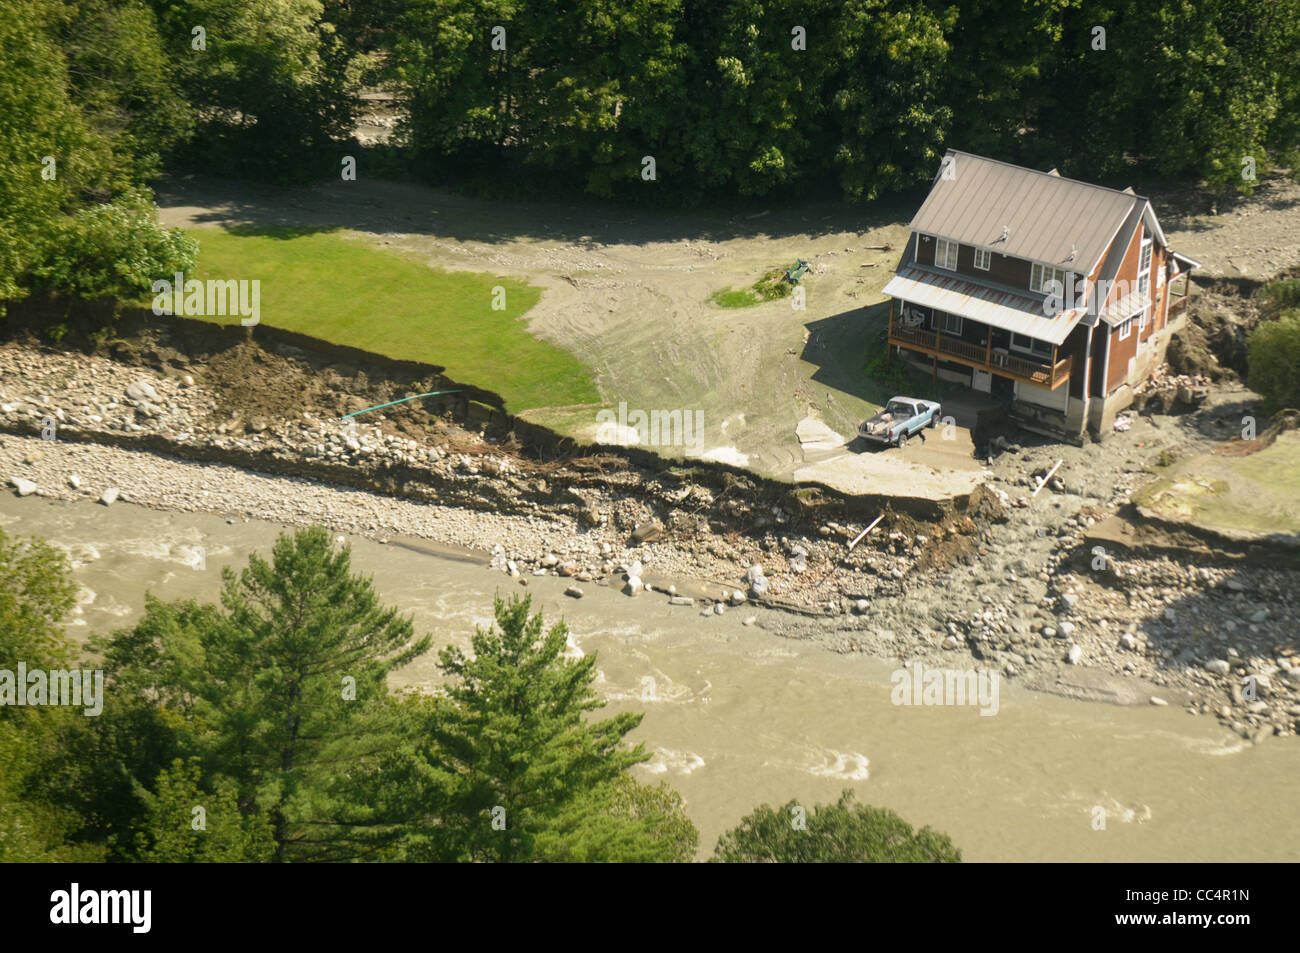 Une route est montré endommagés par l'eau des inondations causées par la tempête tropicale Irene dans le Vermont illustré dans cette photo aérienne. Banque D'Images